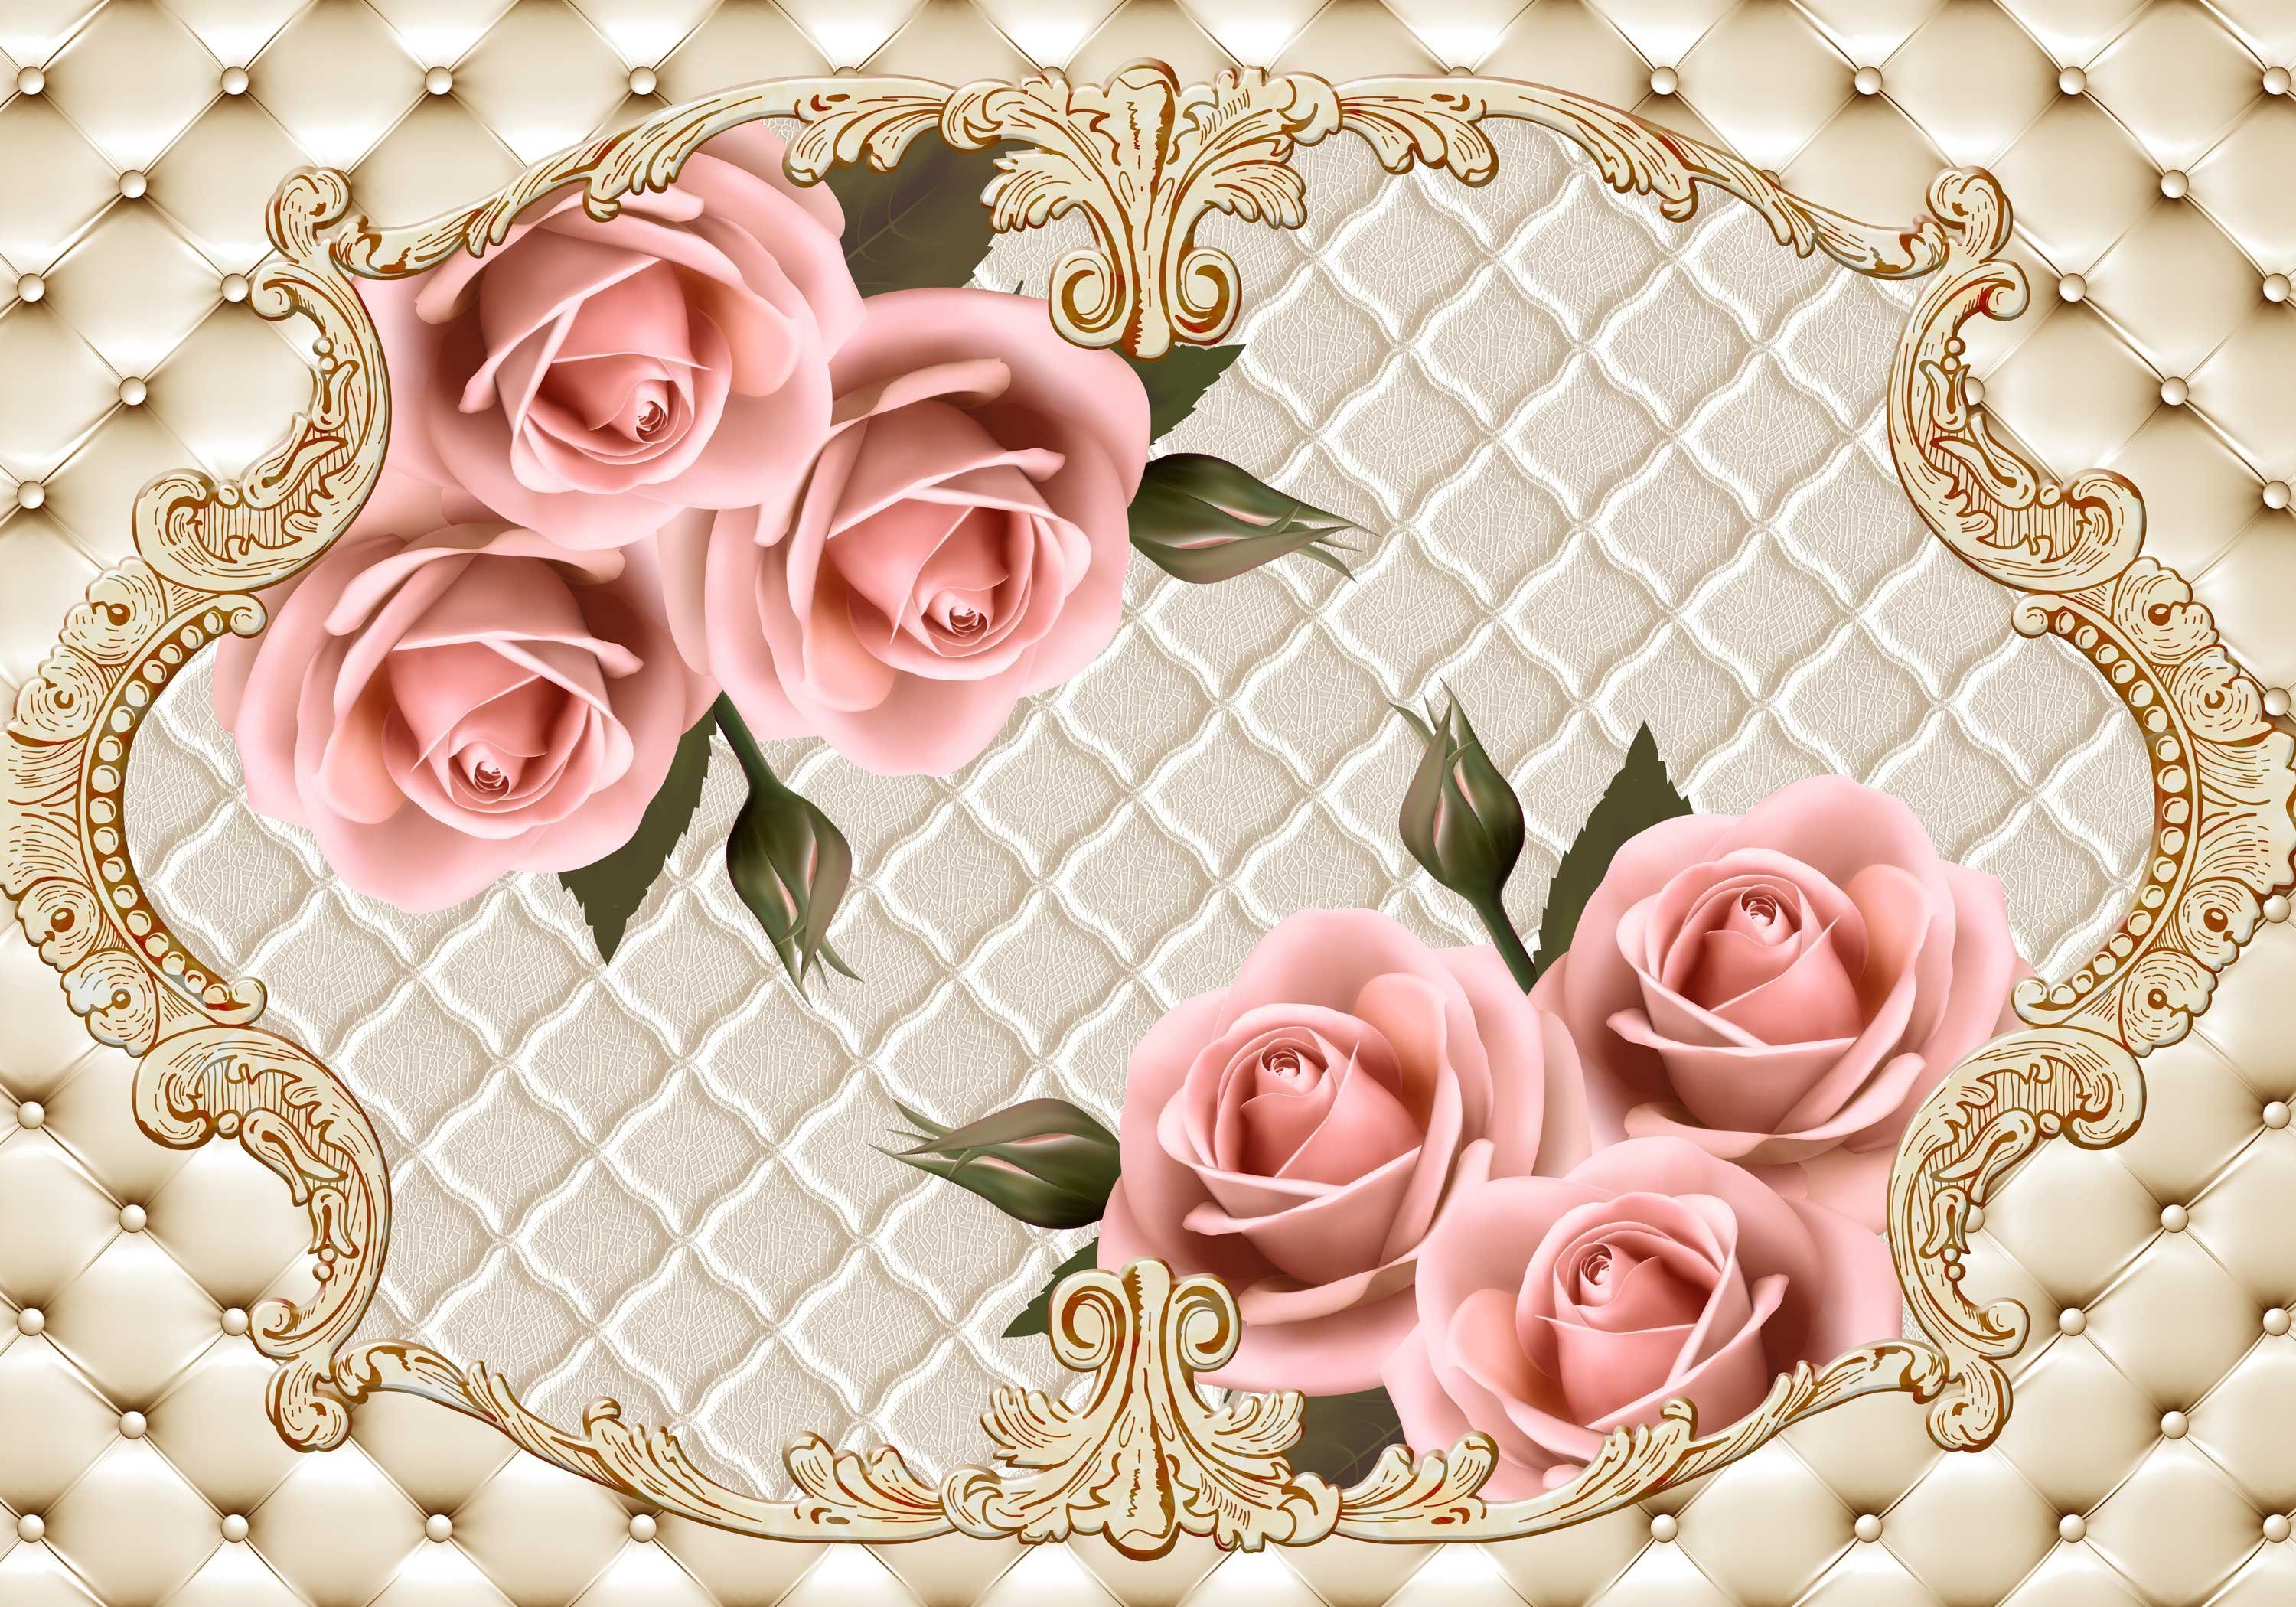 Fototapete Vliestapete Rosenblüten Motivtapete, matt, Wandtapete, Ornamente wandmotiv24 Leder, glatt,